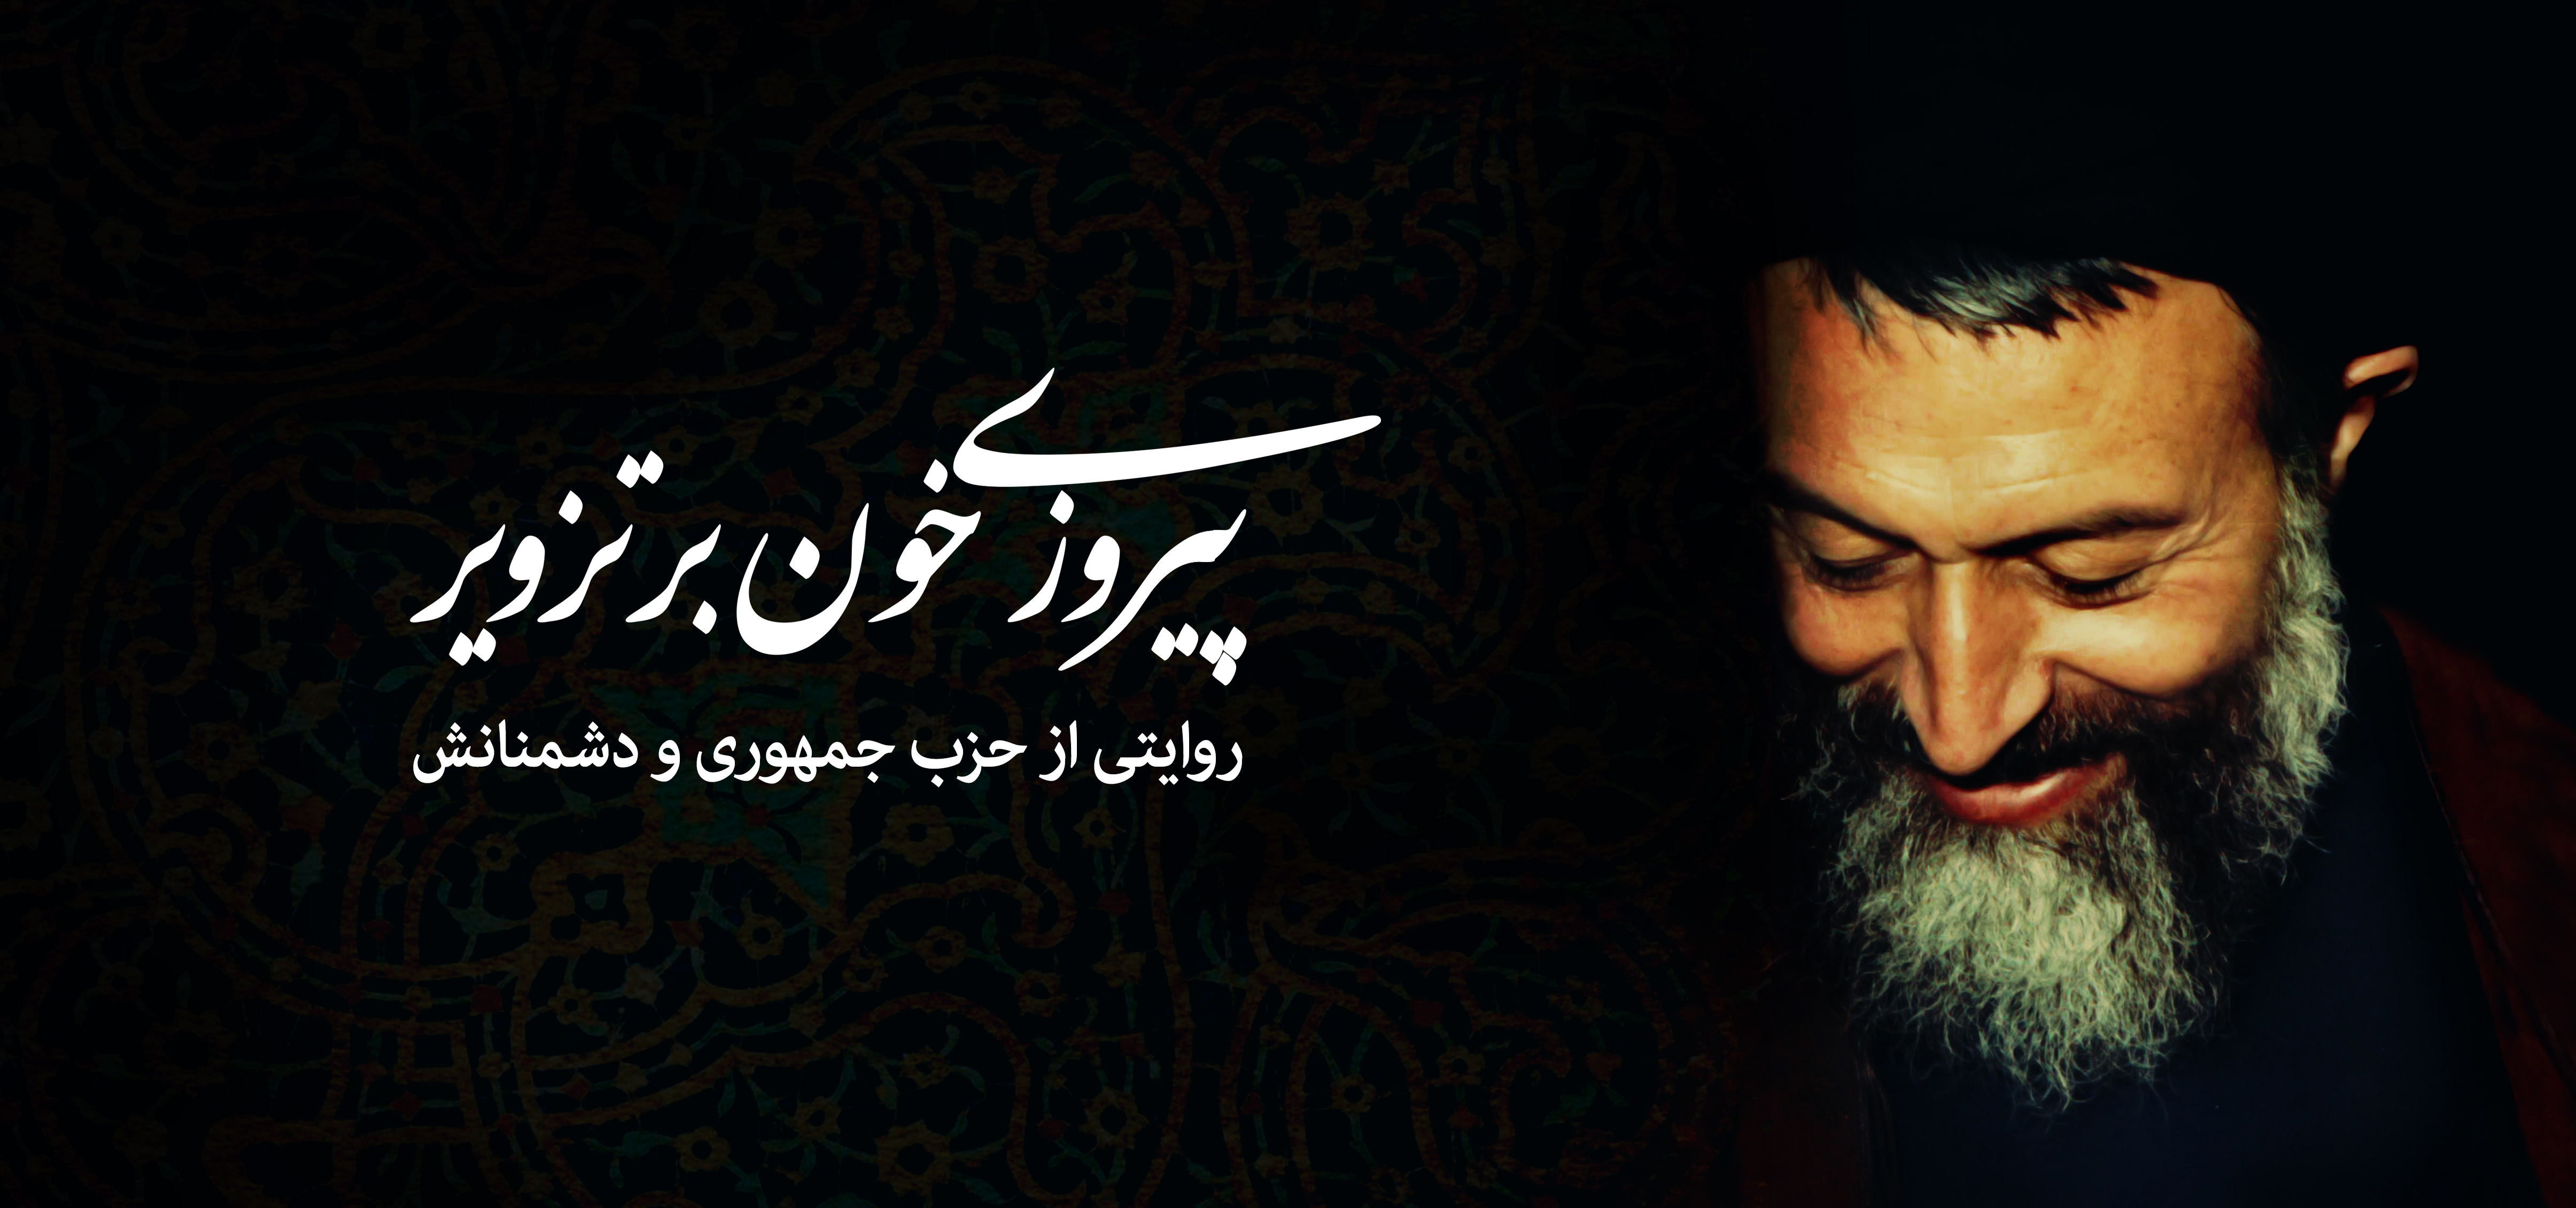 Titr1-Shahid Beheshti.jpg